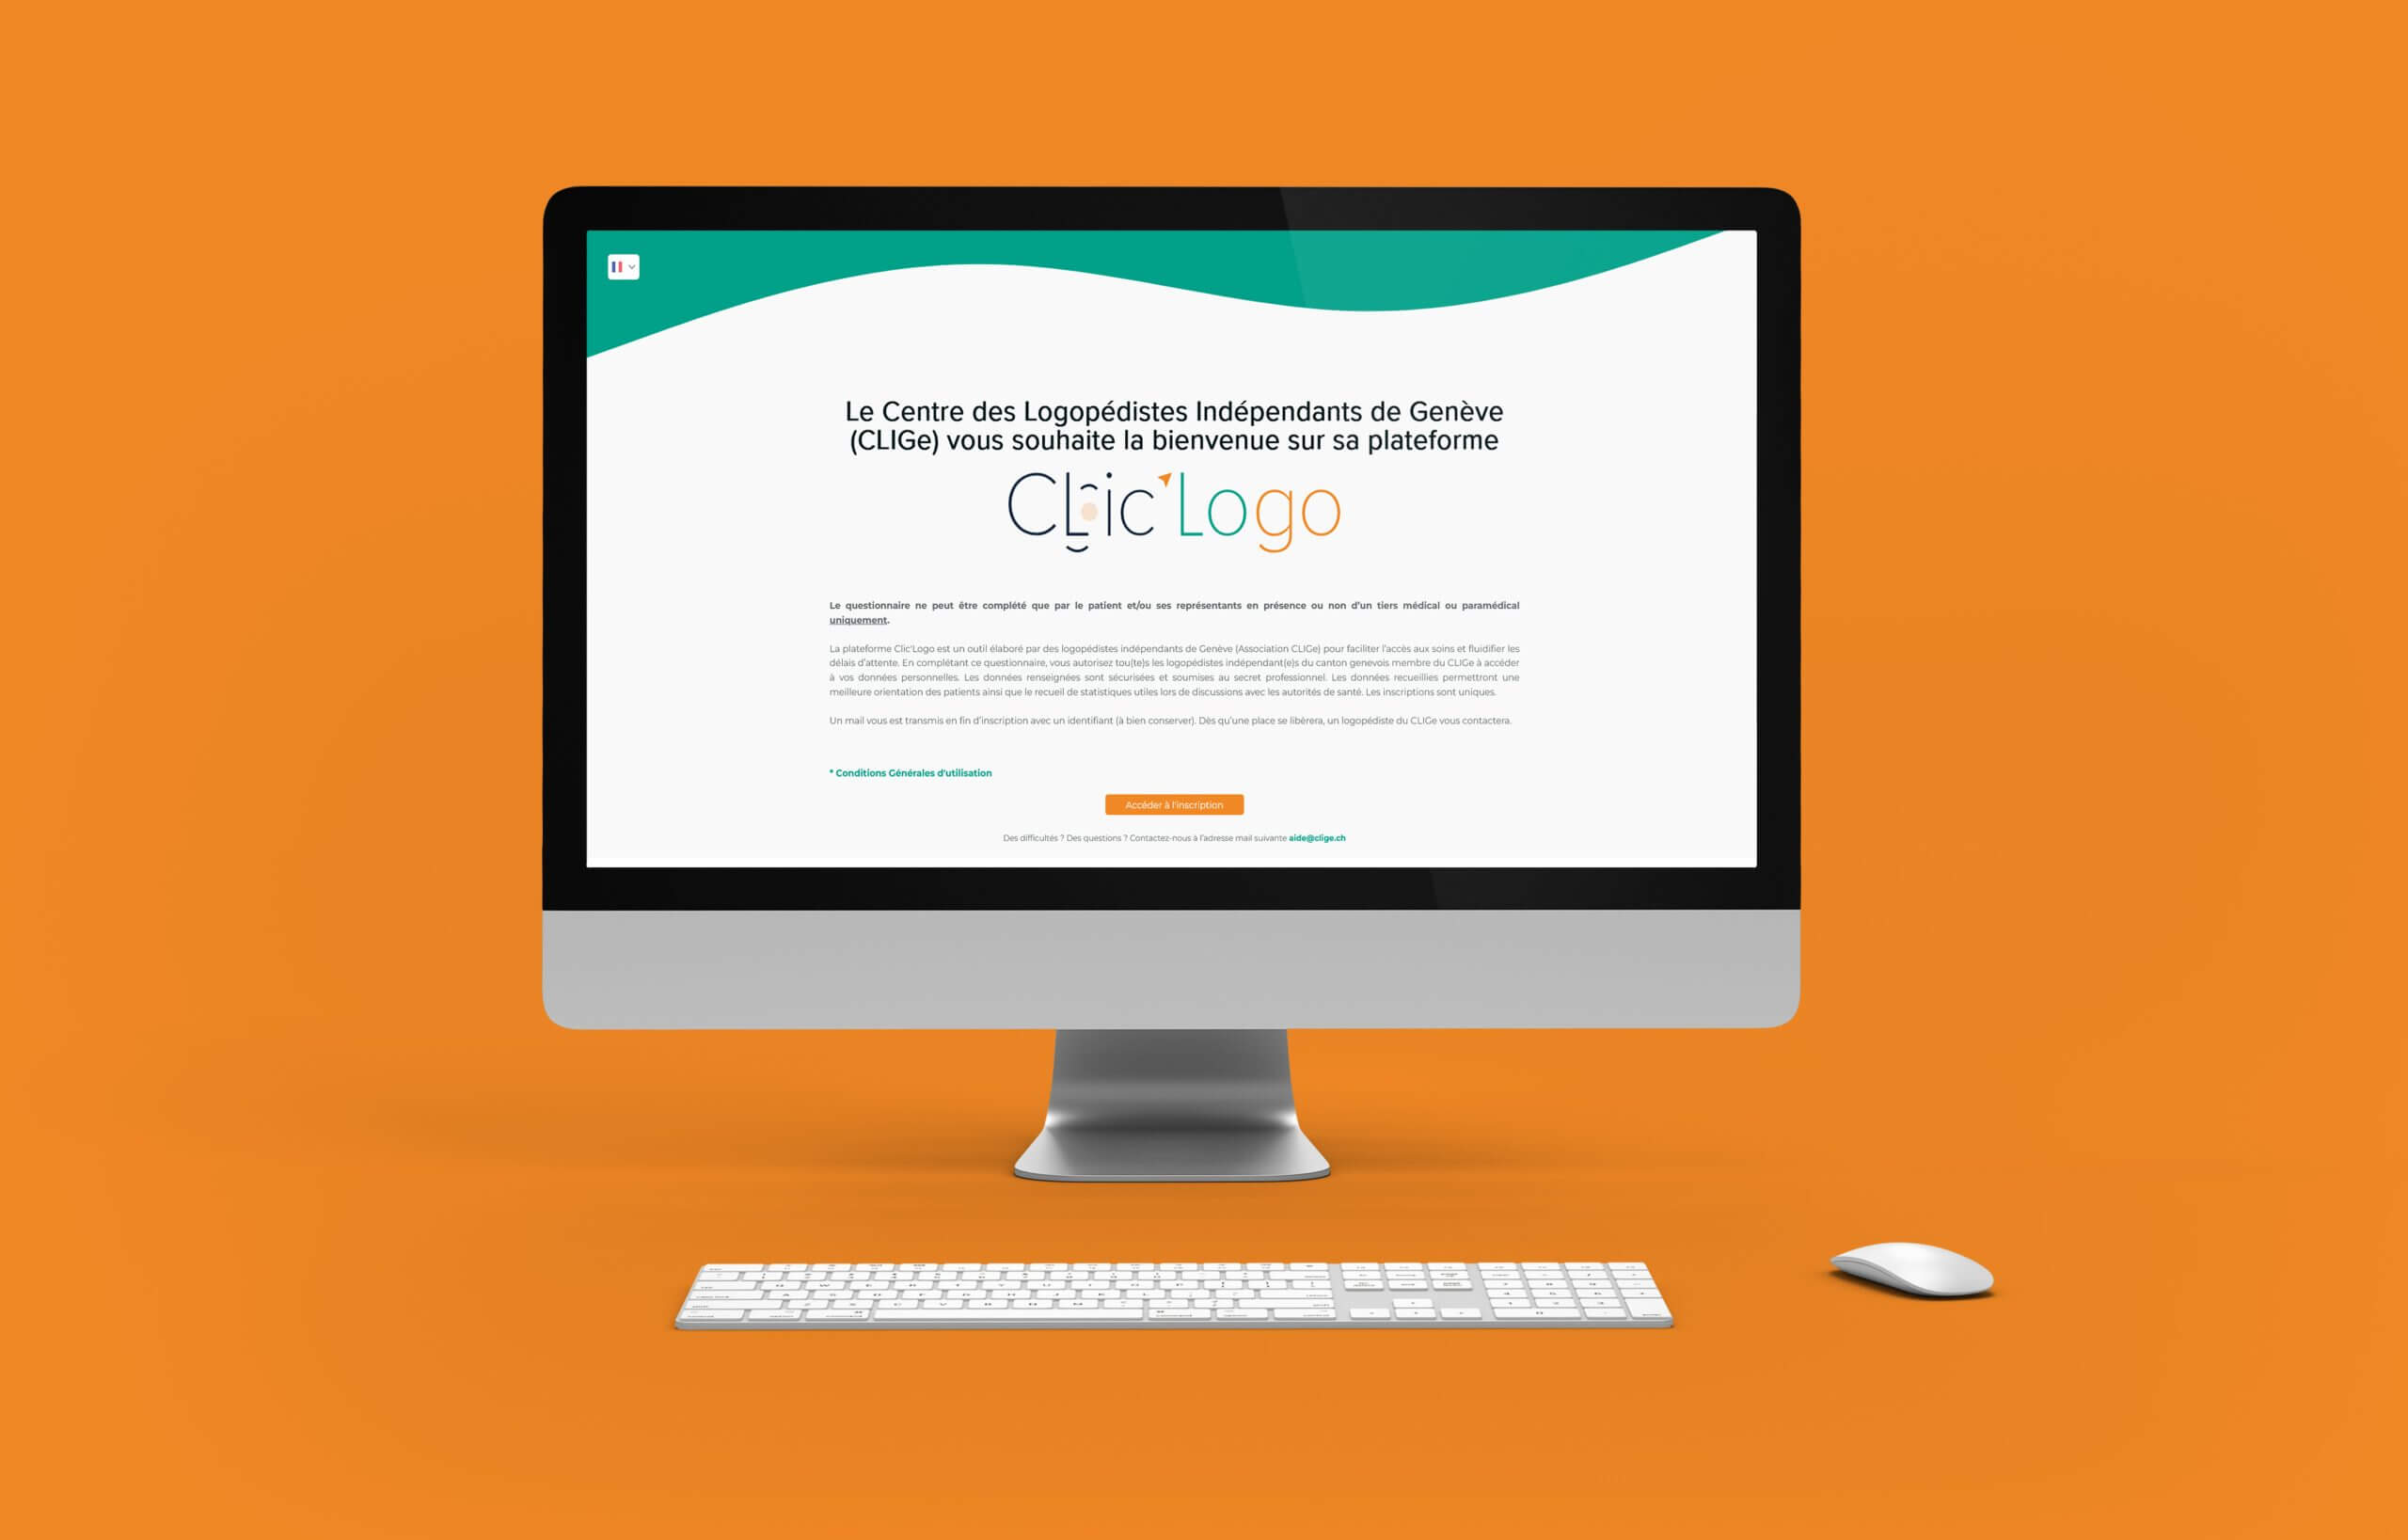 Clic'logo, une plateforme fondée par le Clige pour l’inscription des patients